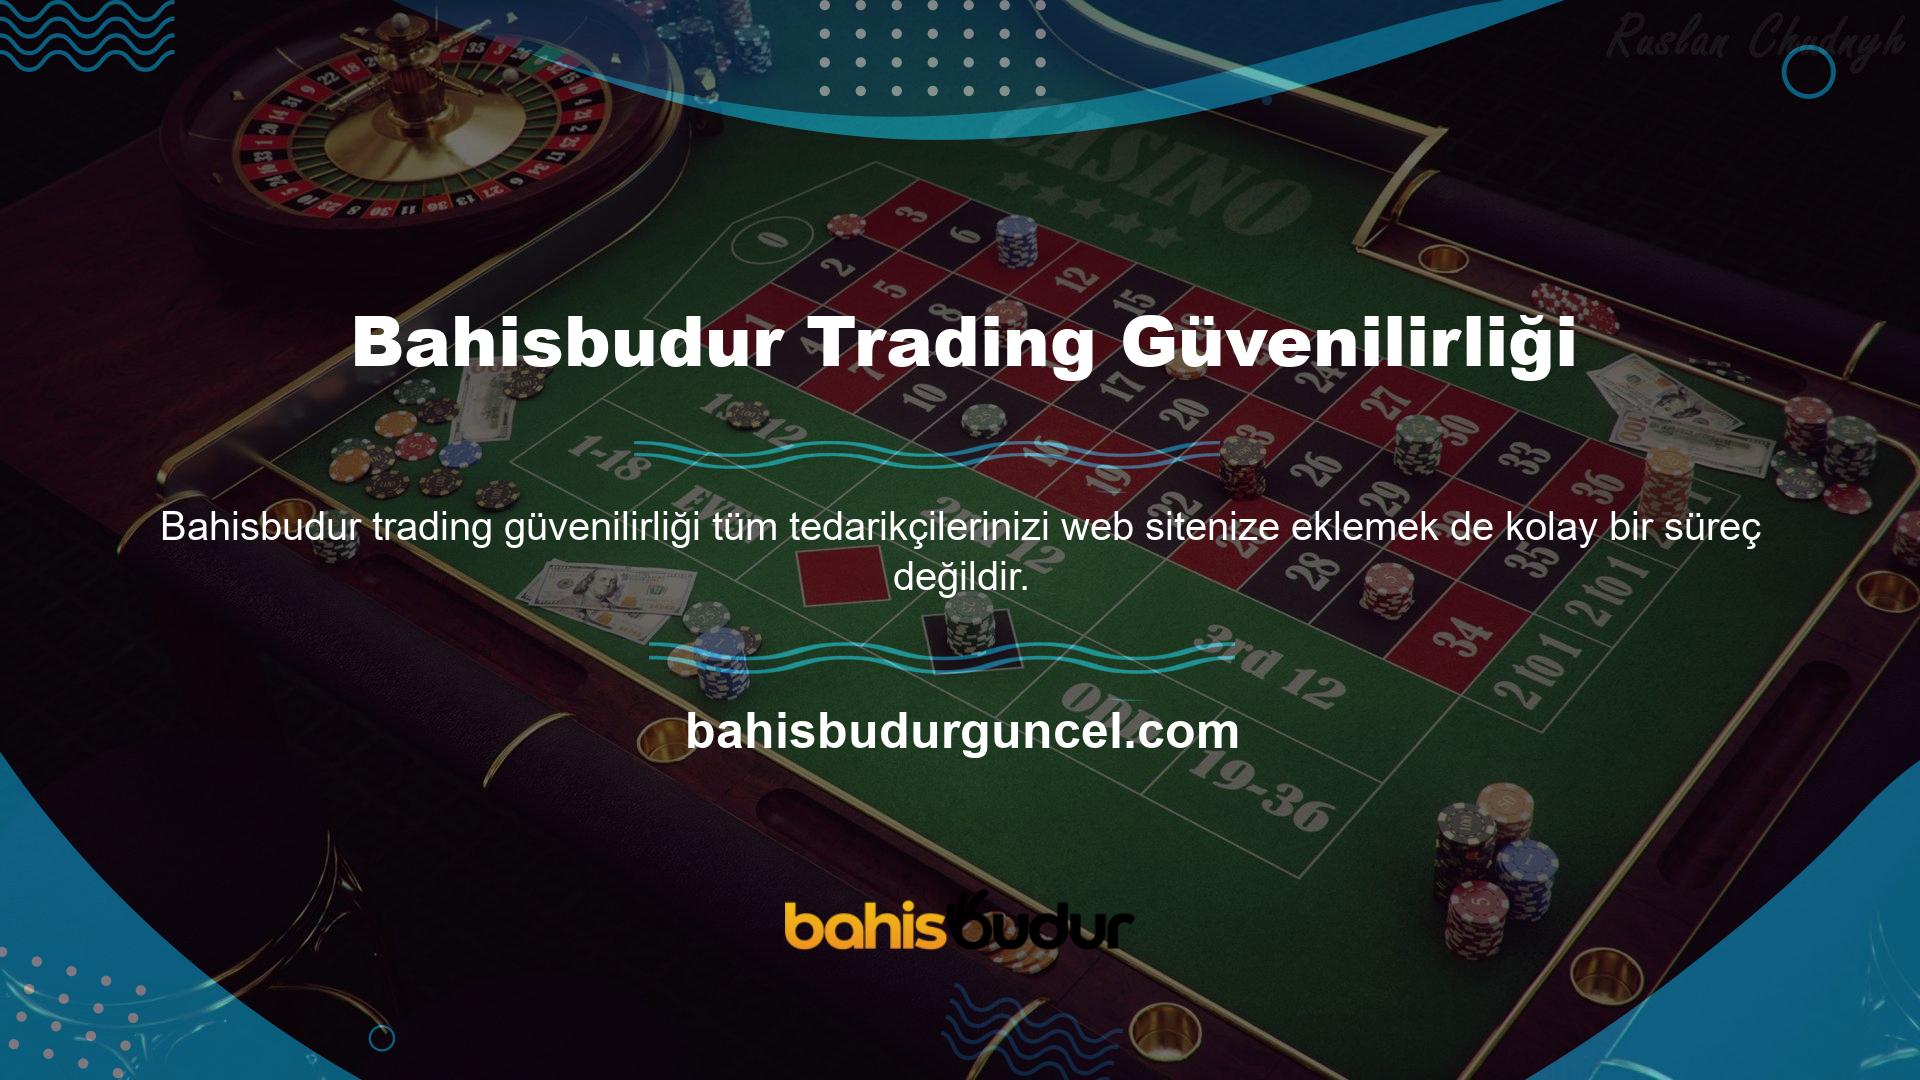 Online Yardım Operatörü Bahisbudur 7/24 online hizmet sunmaktadır